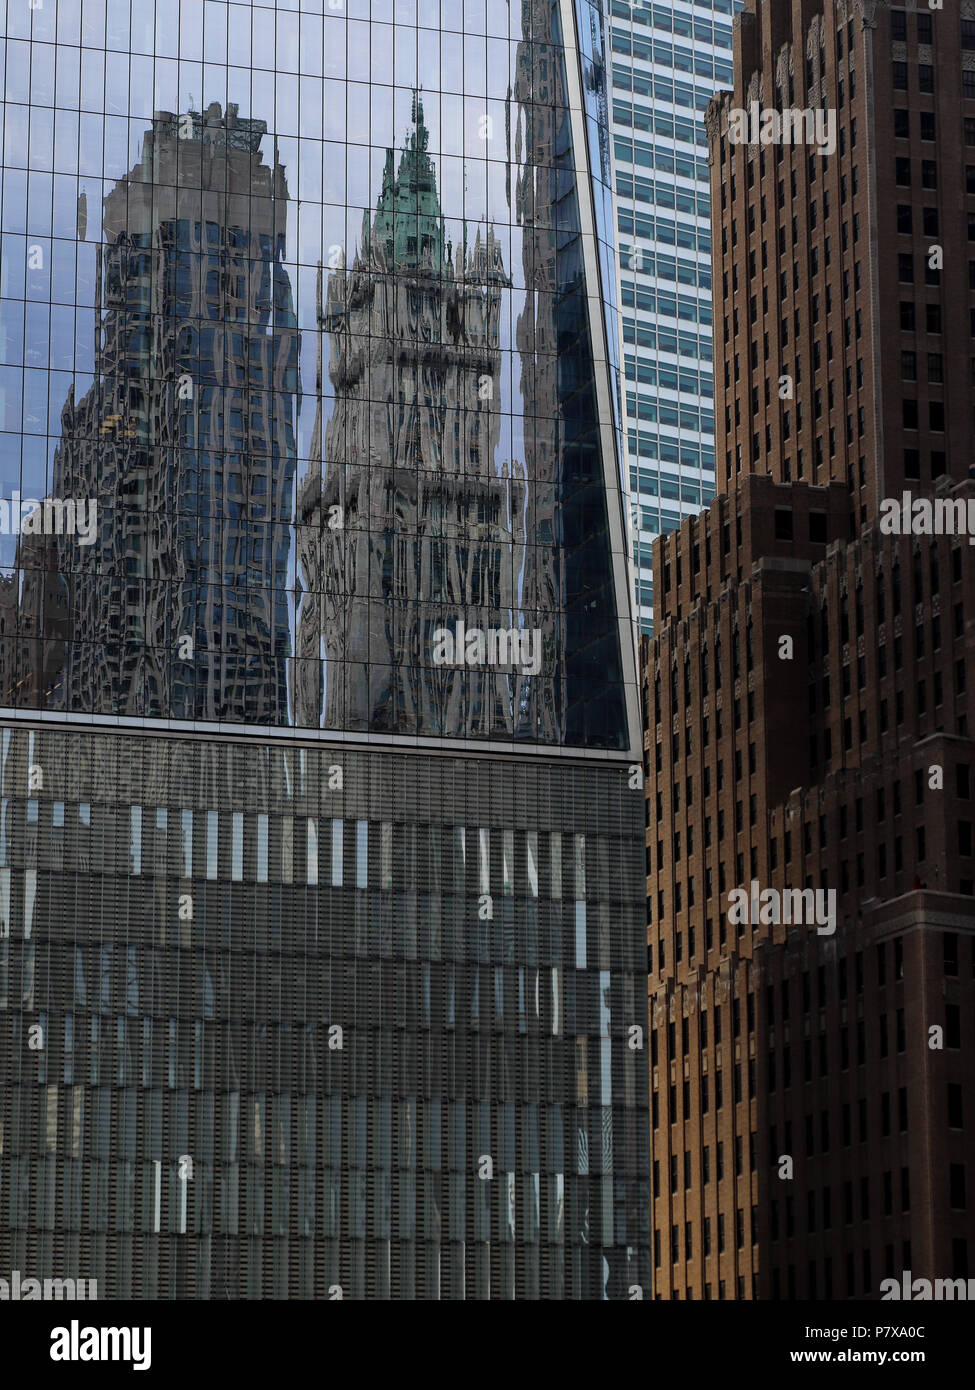 One World Trade Center à New York offre une palette de vitreux pour refléter les édifices, comme la tête de cuivre Woolworth Building dans le centre. Banque D'Images